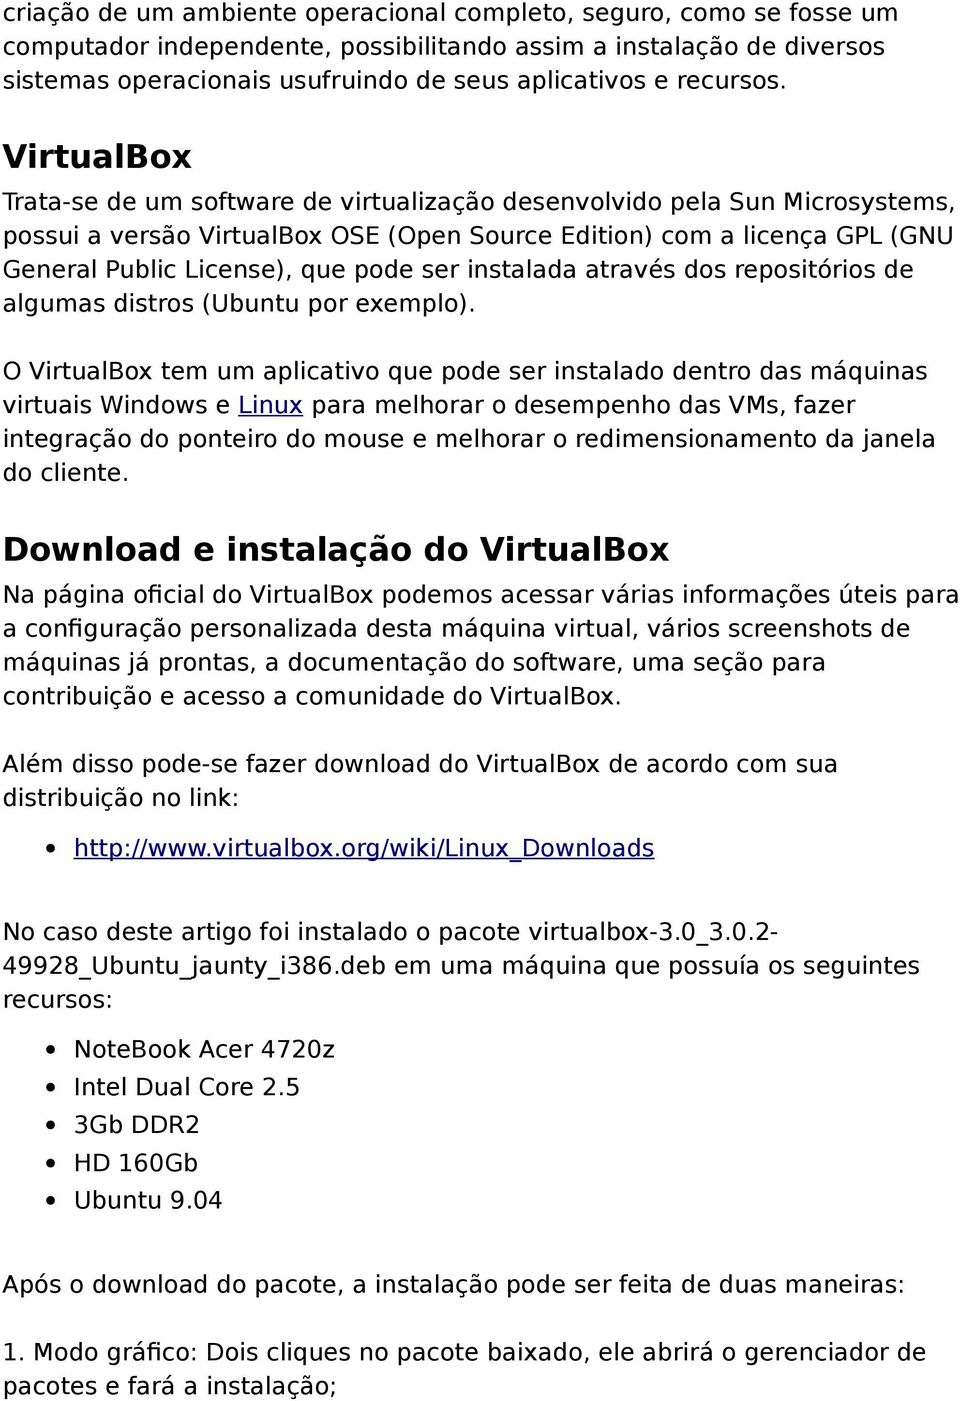 VirtualBox Trata-se de um software de virtualização desenvolvido pela Sun Microsystems, possui a versão VirtualBox OSE (Open Source Edition) com a licença GPL (GNU General Public License), que pode